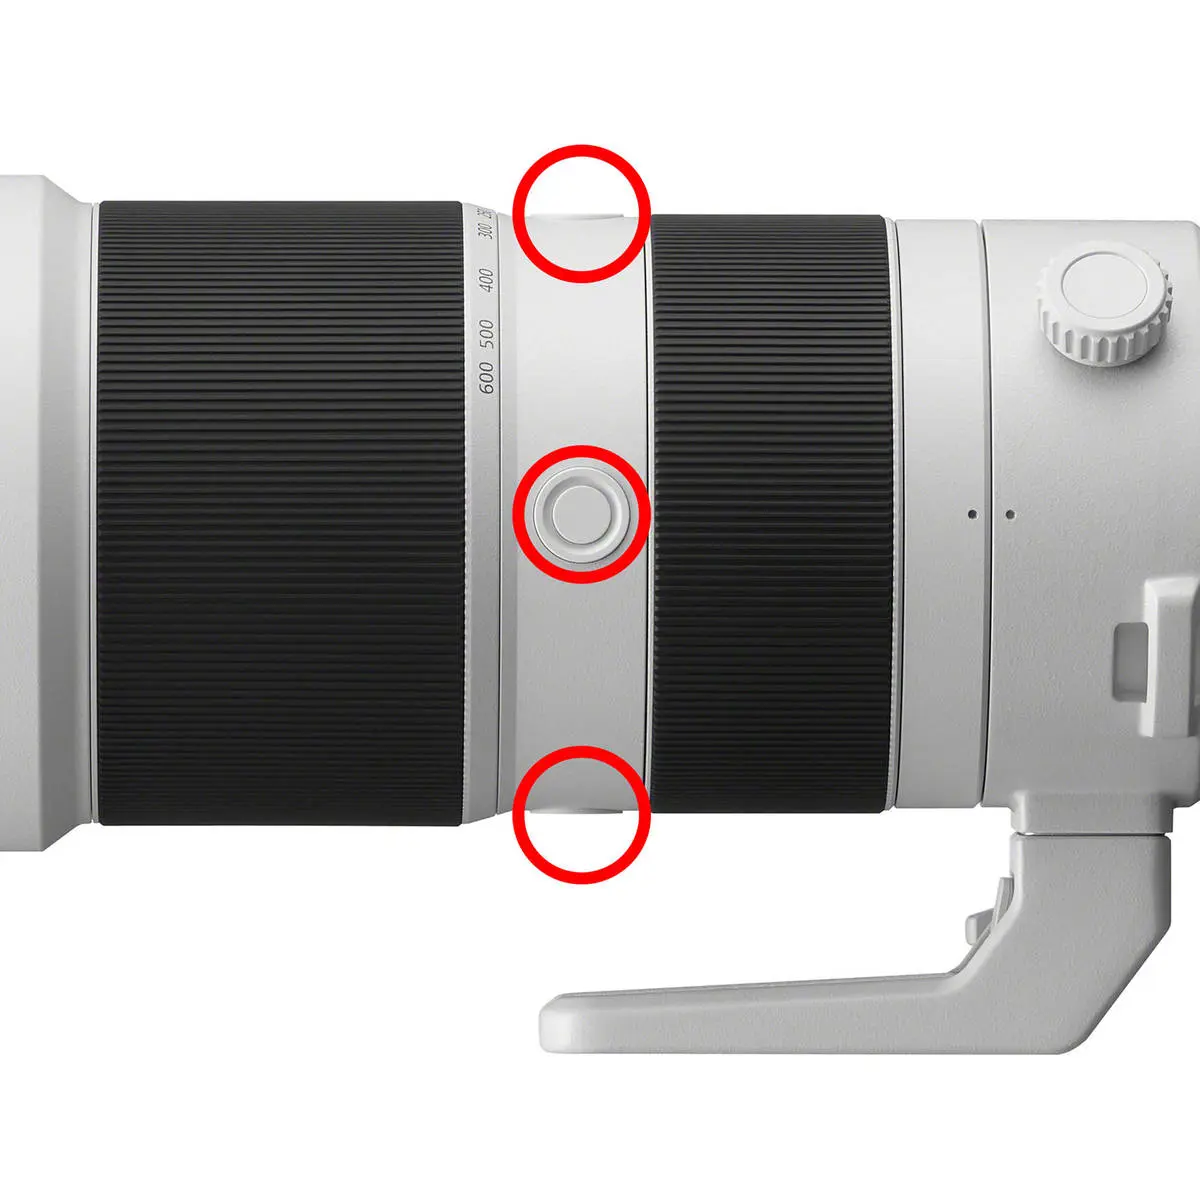 11. Sony FE 200-600mm f/5.6-6.3 G OSS Telephoto Lens E-Mount